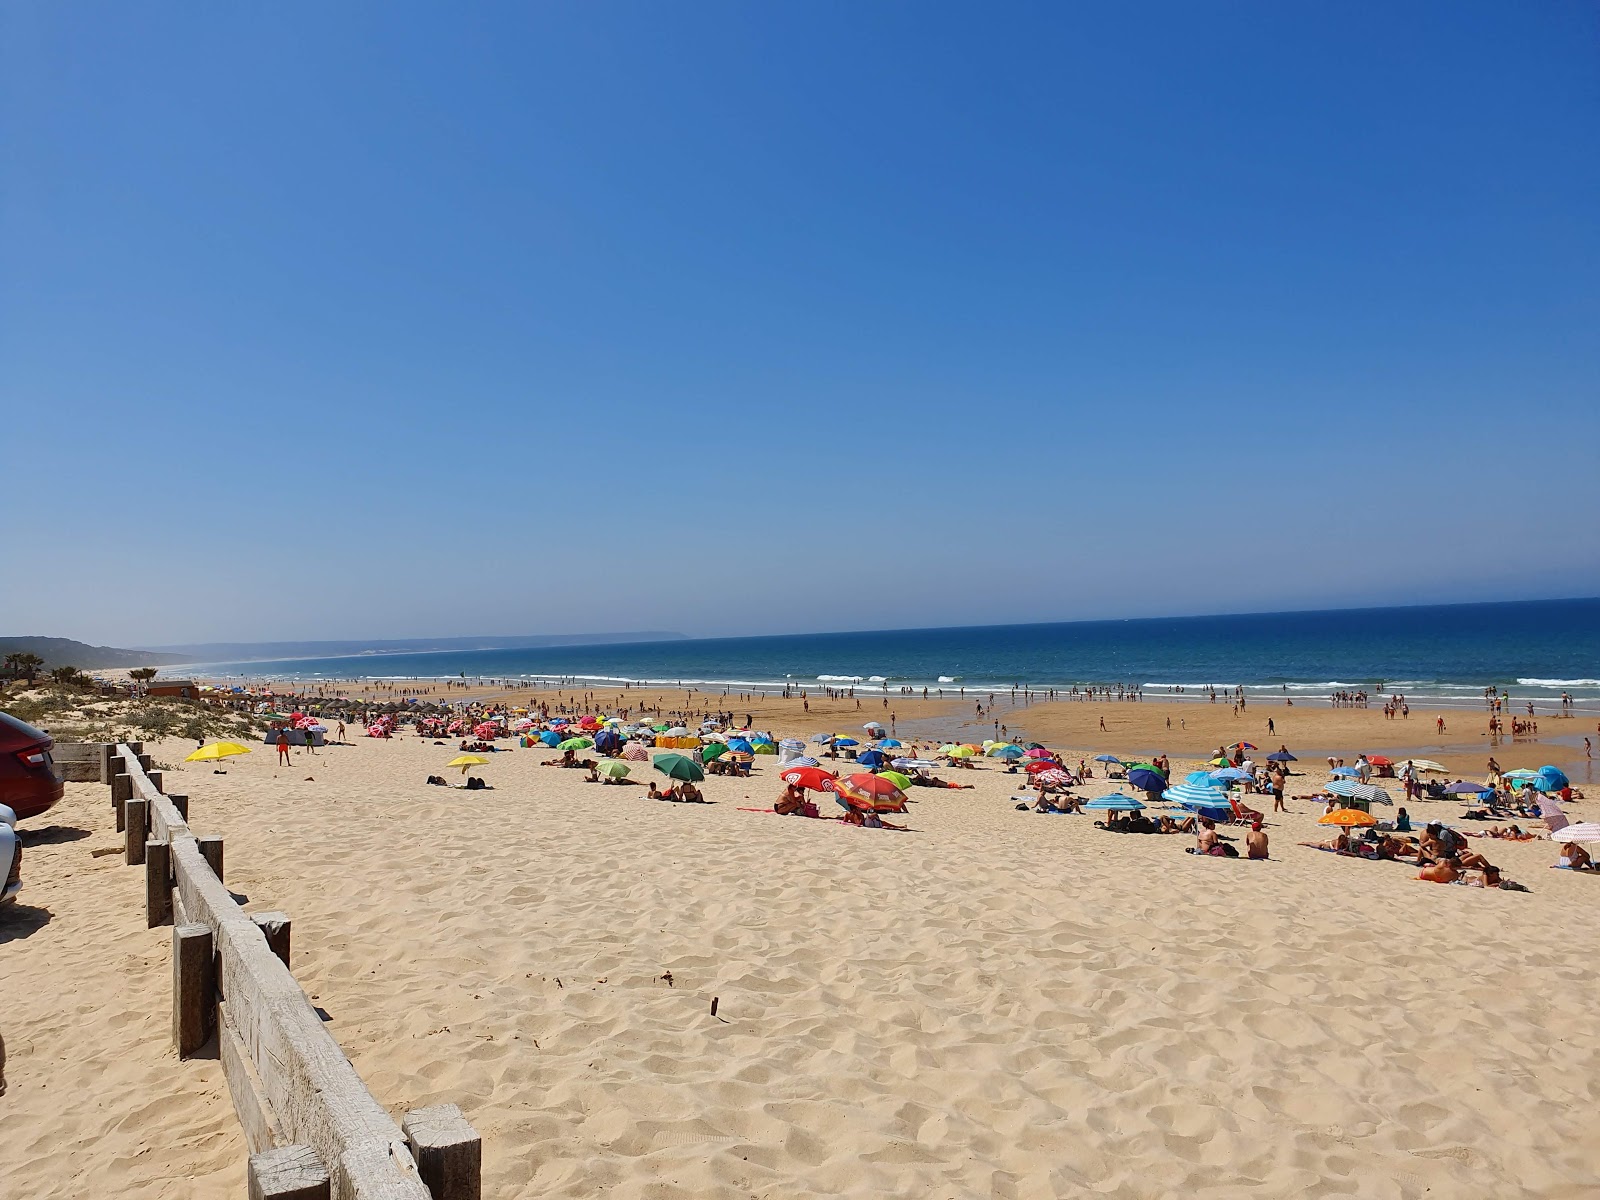 Foto af Praia da Fonte da Telha - populært sted blandt afslapningskendere